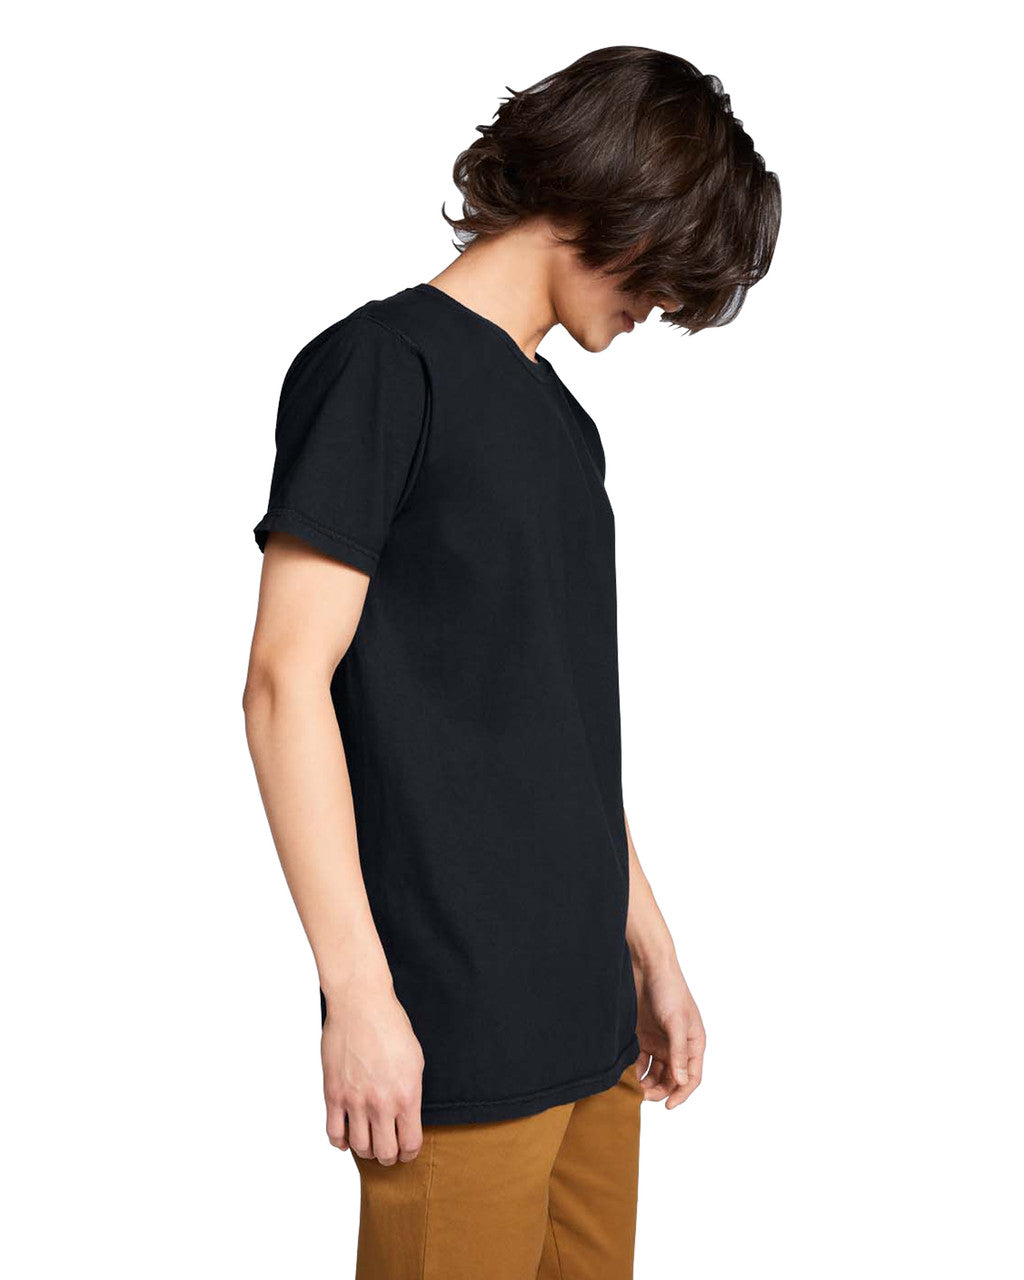 Camiseta Comfort Colors Negro  Ref. 1717